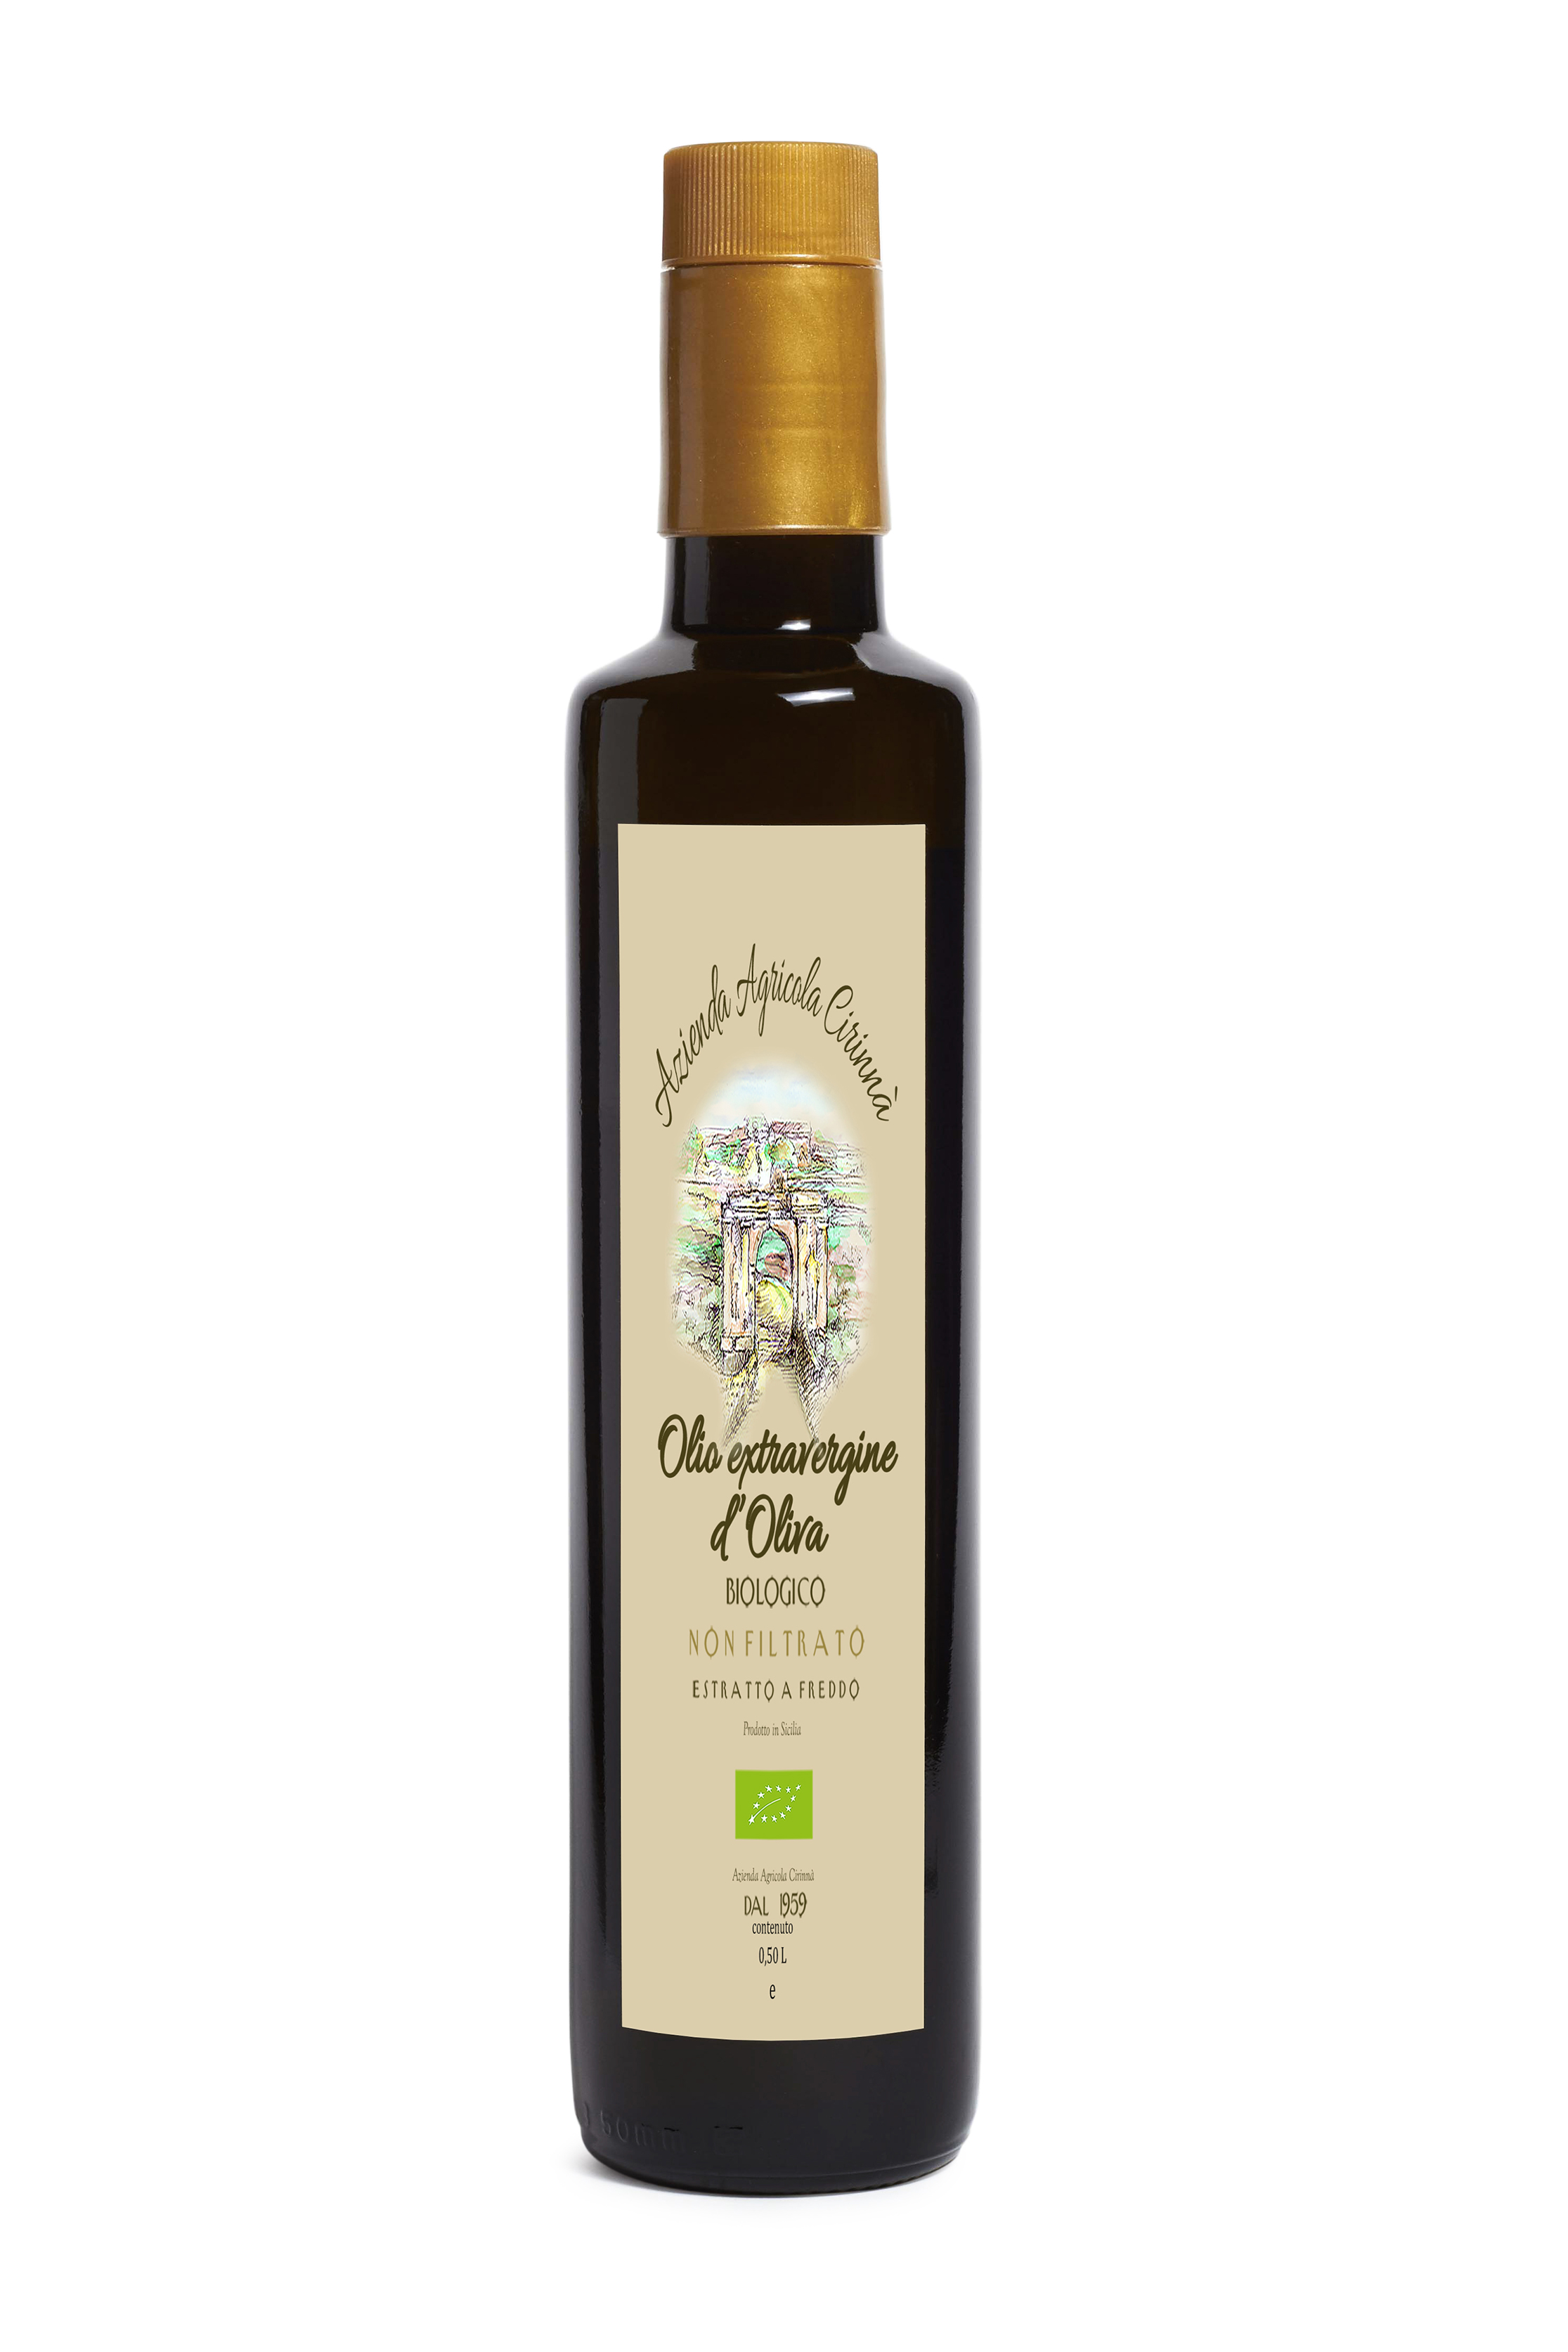 Olio Extravegine di Oliva 100% Siciliano origine Monti Iblei